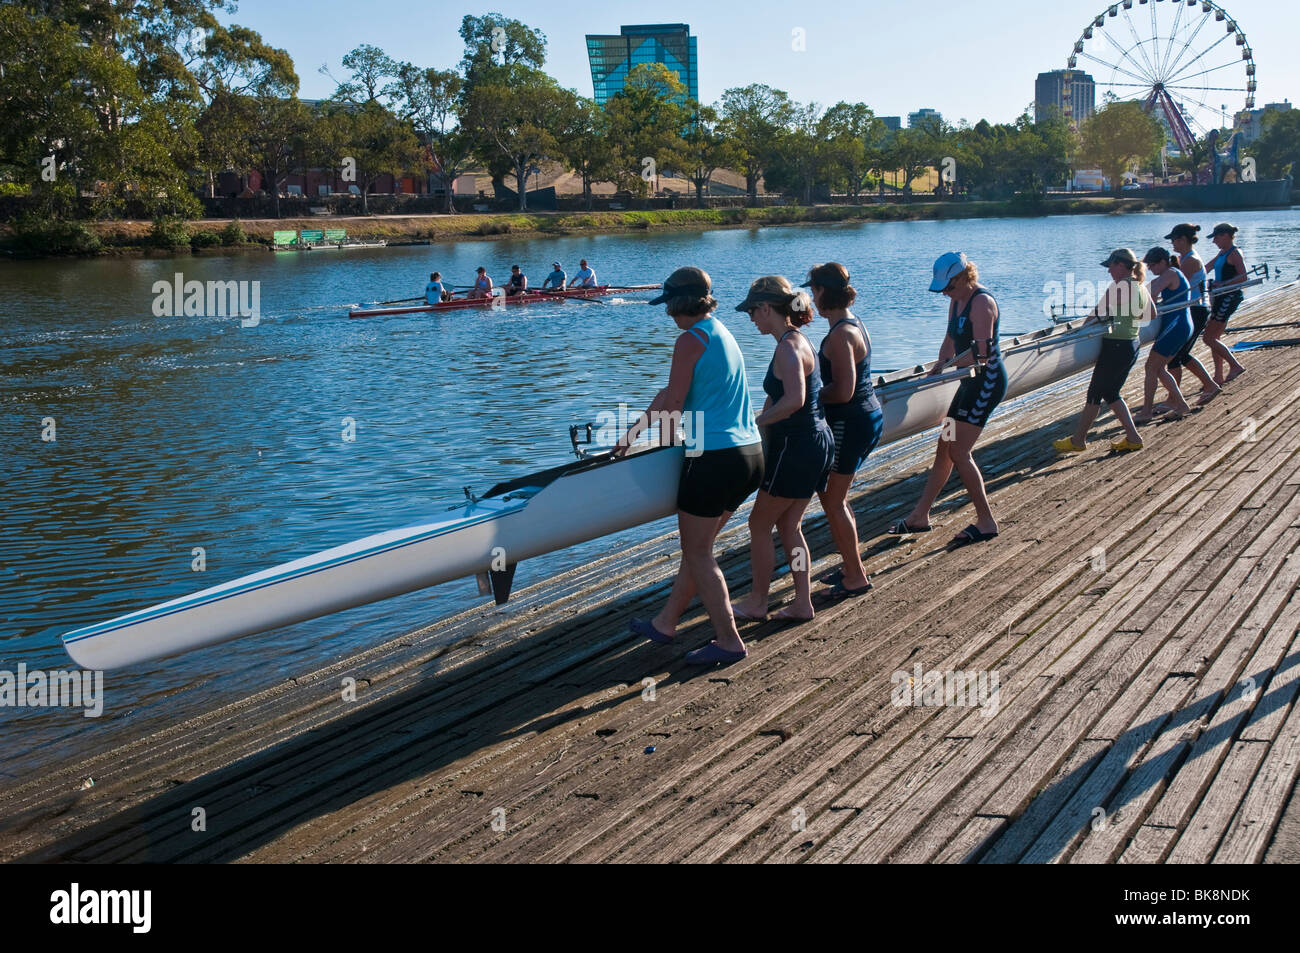 Les équipes d'aviron sur la rivière Yarra de Melbourne, Victoria Australie Banque D'Images